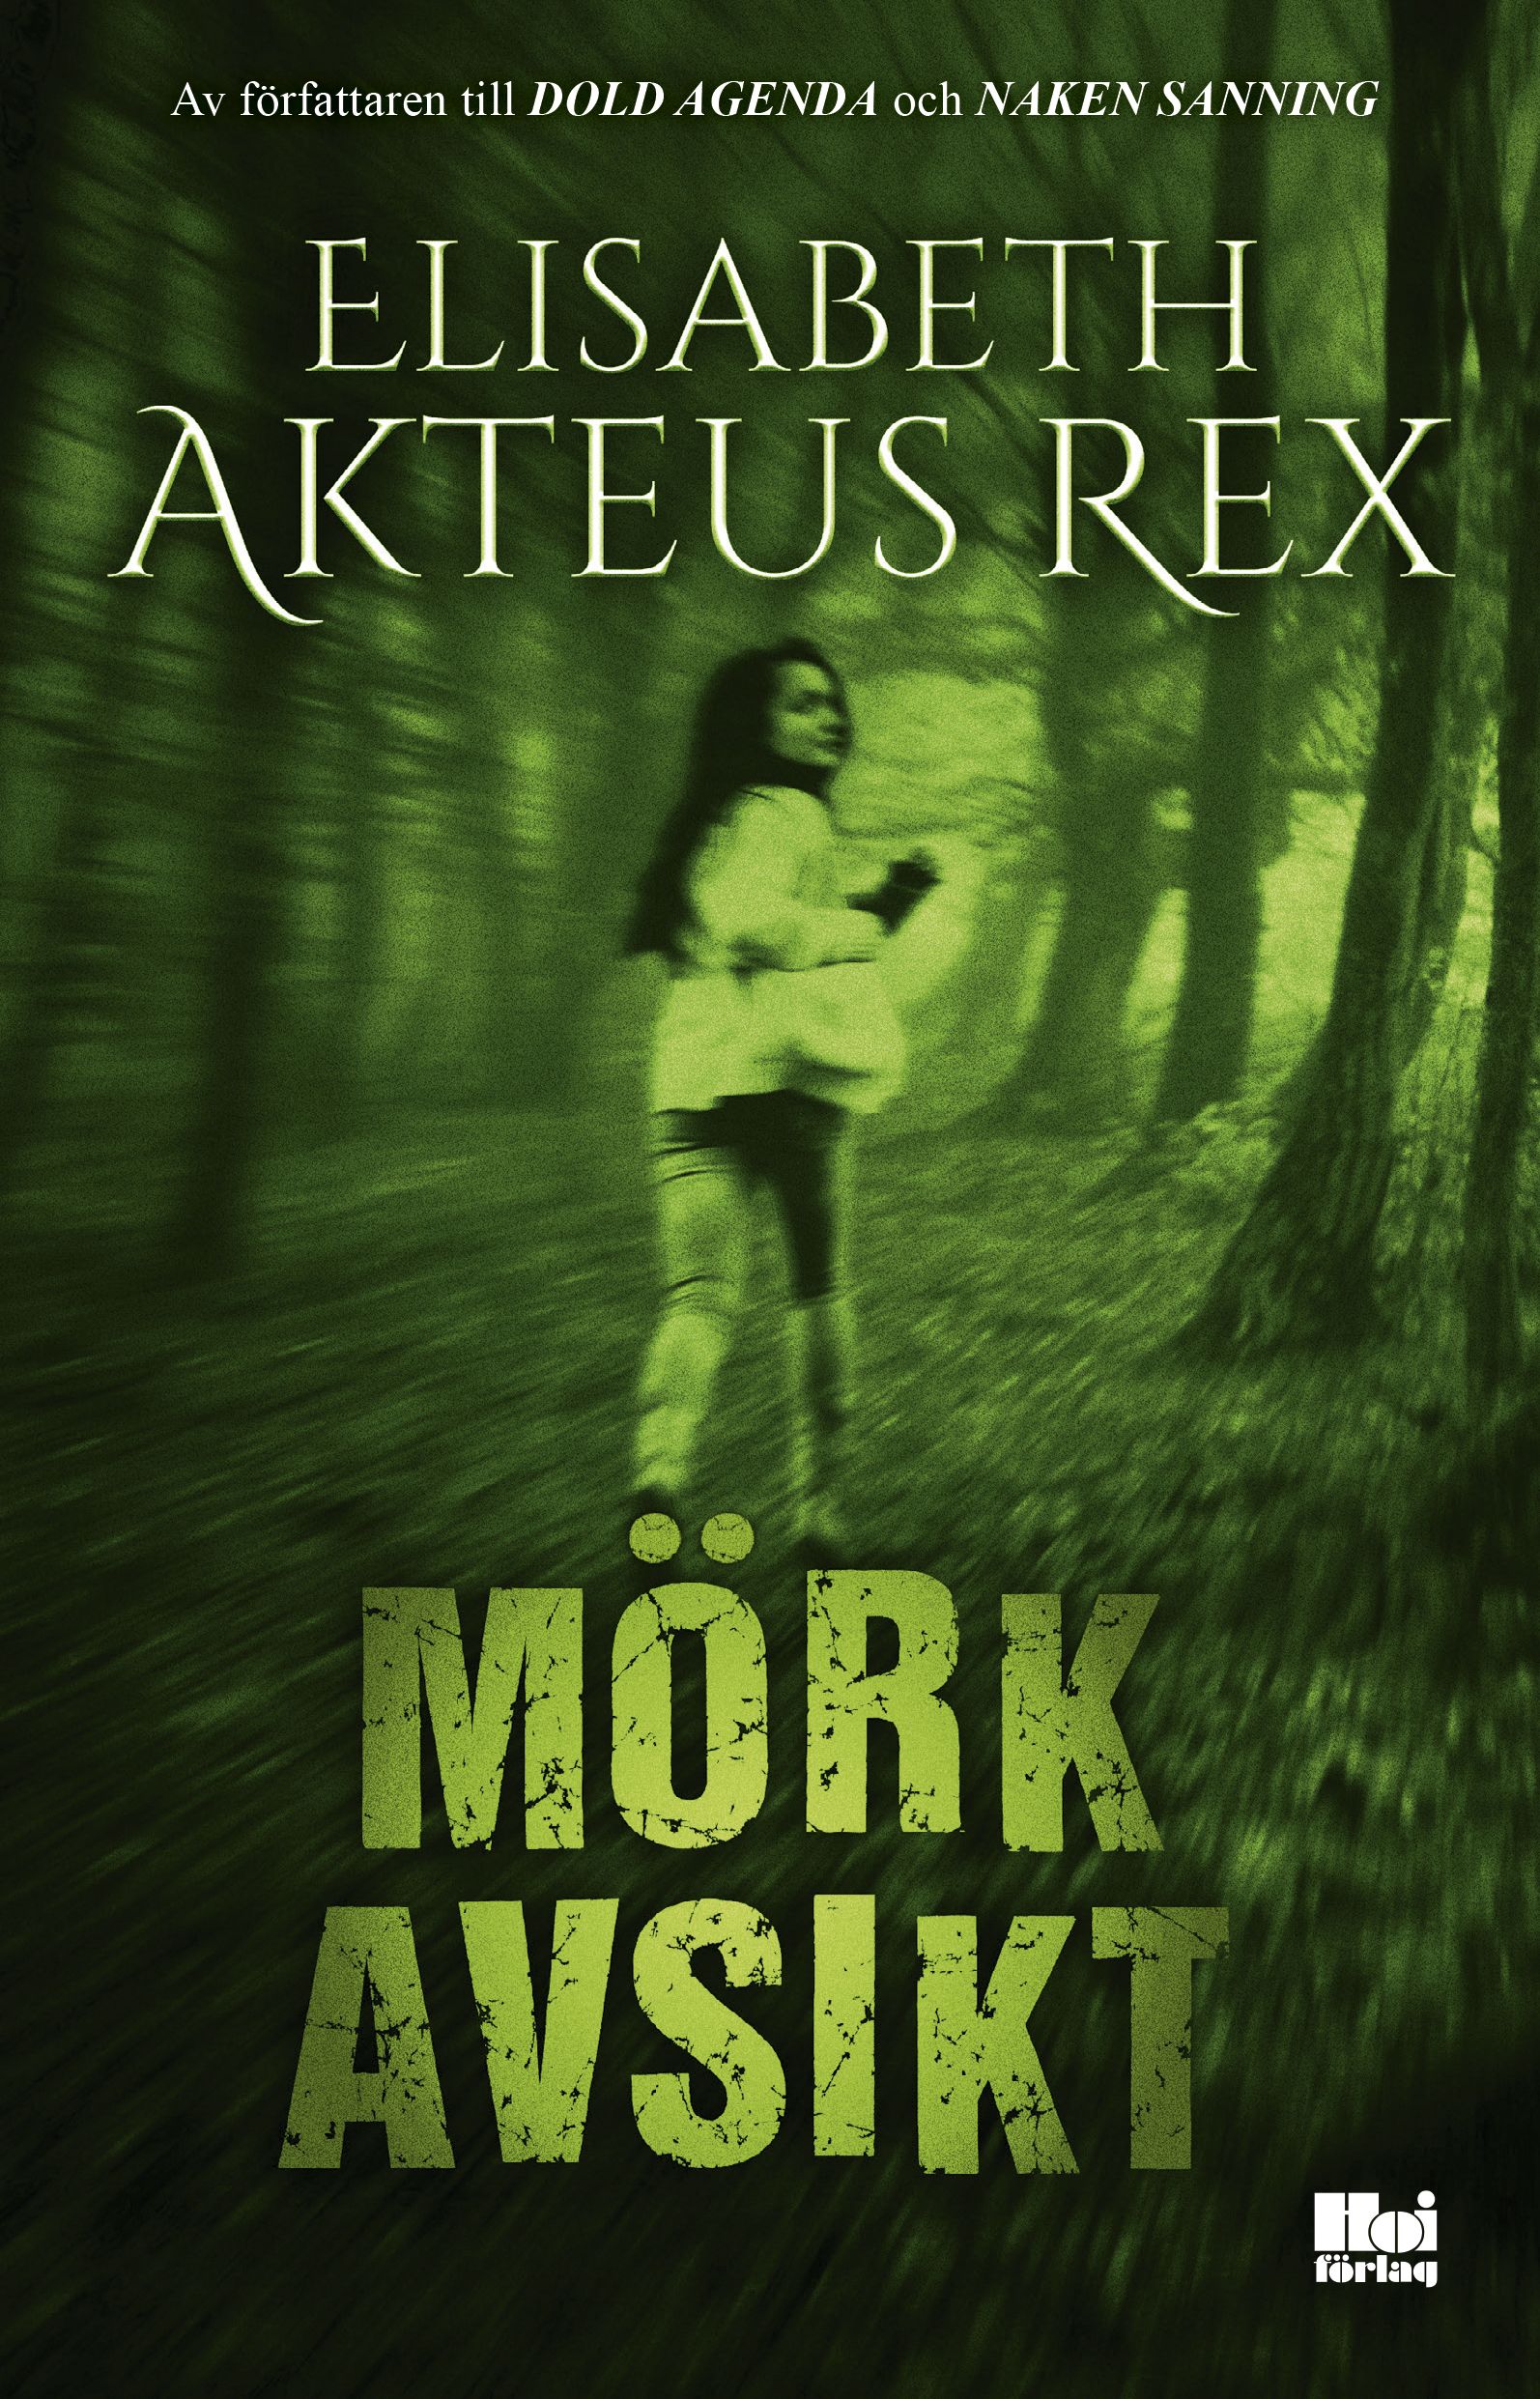 Mörk avsikt, e-bok av Elisabeth Akteus Rex